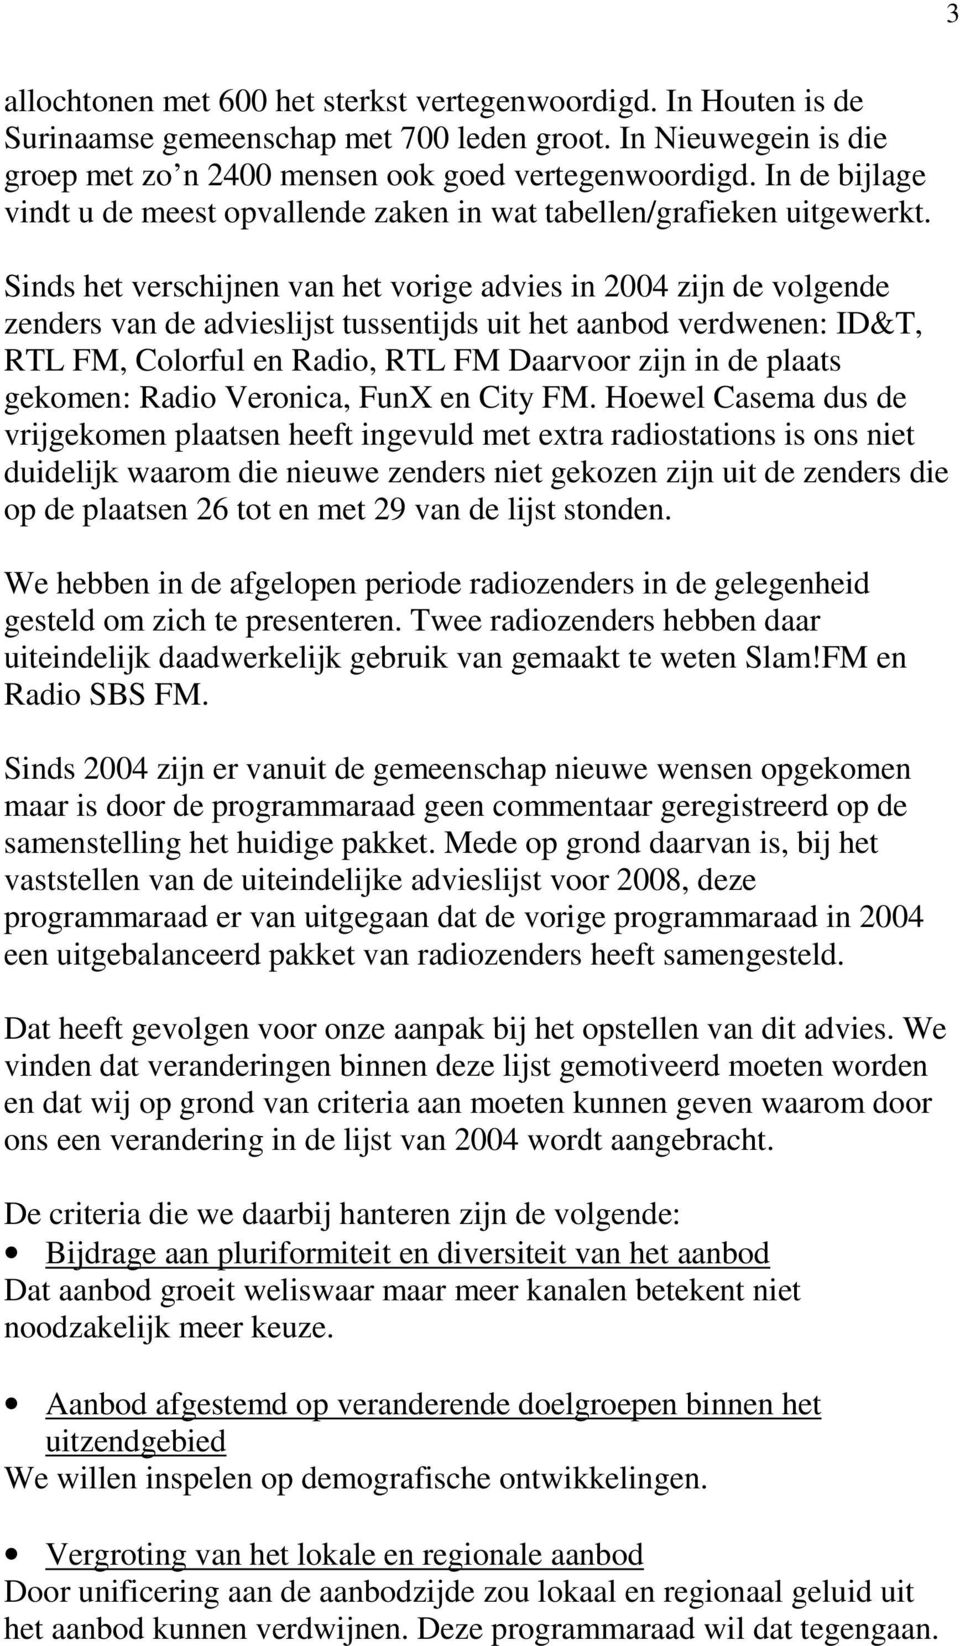 Sinds het verschijnen van het vorige advies in 2004 zijn de volgende zenders van de advieslijst tussentijds uit het aanbod verdwenen: ID&T, RTL FM, Colorful en Radio, RTL FM Daarvoor zijn in de